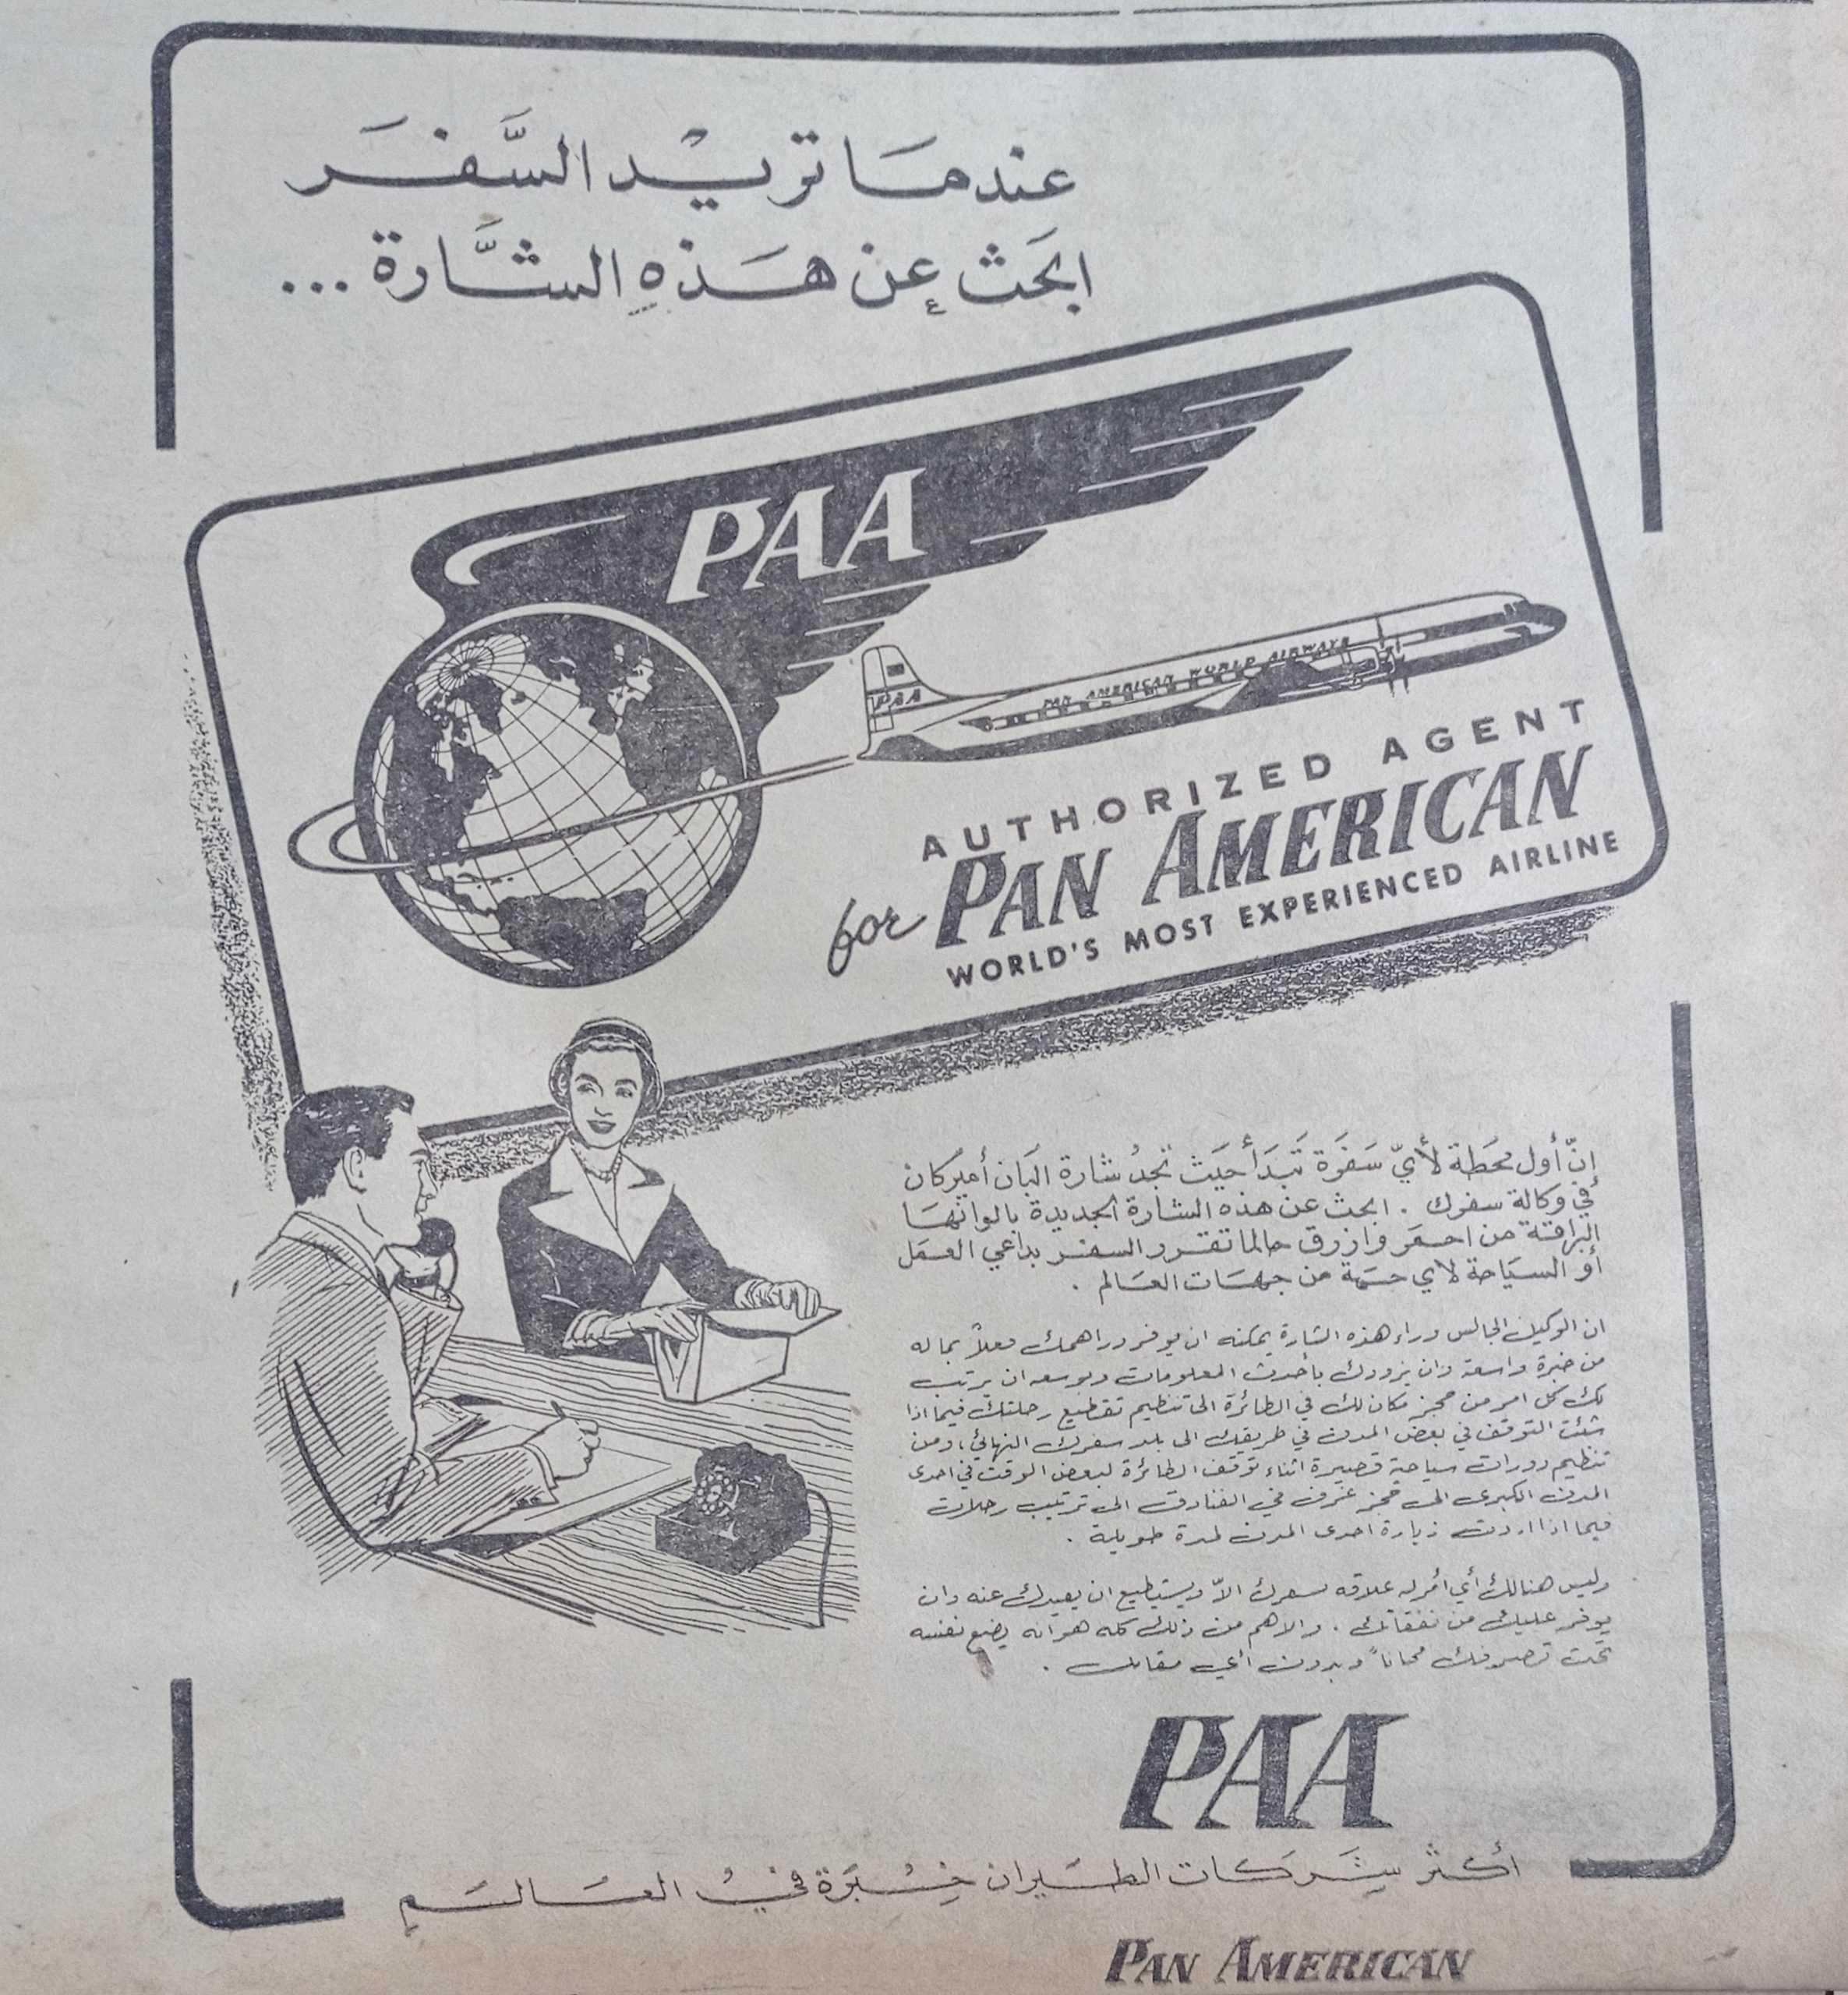 التاريخ السوري المعاصر - إعلان شركة "بان أمريكان" للطيران في سورية عام 1956